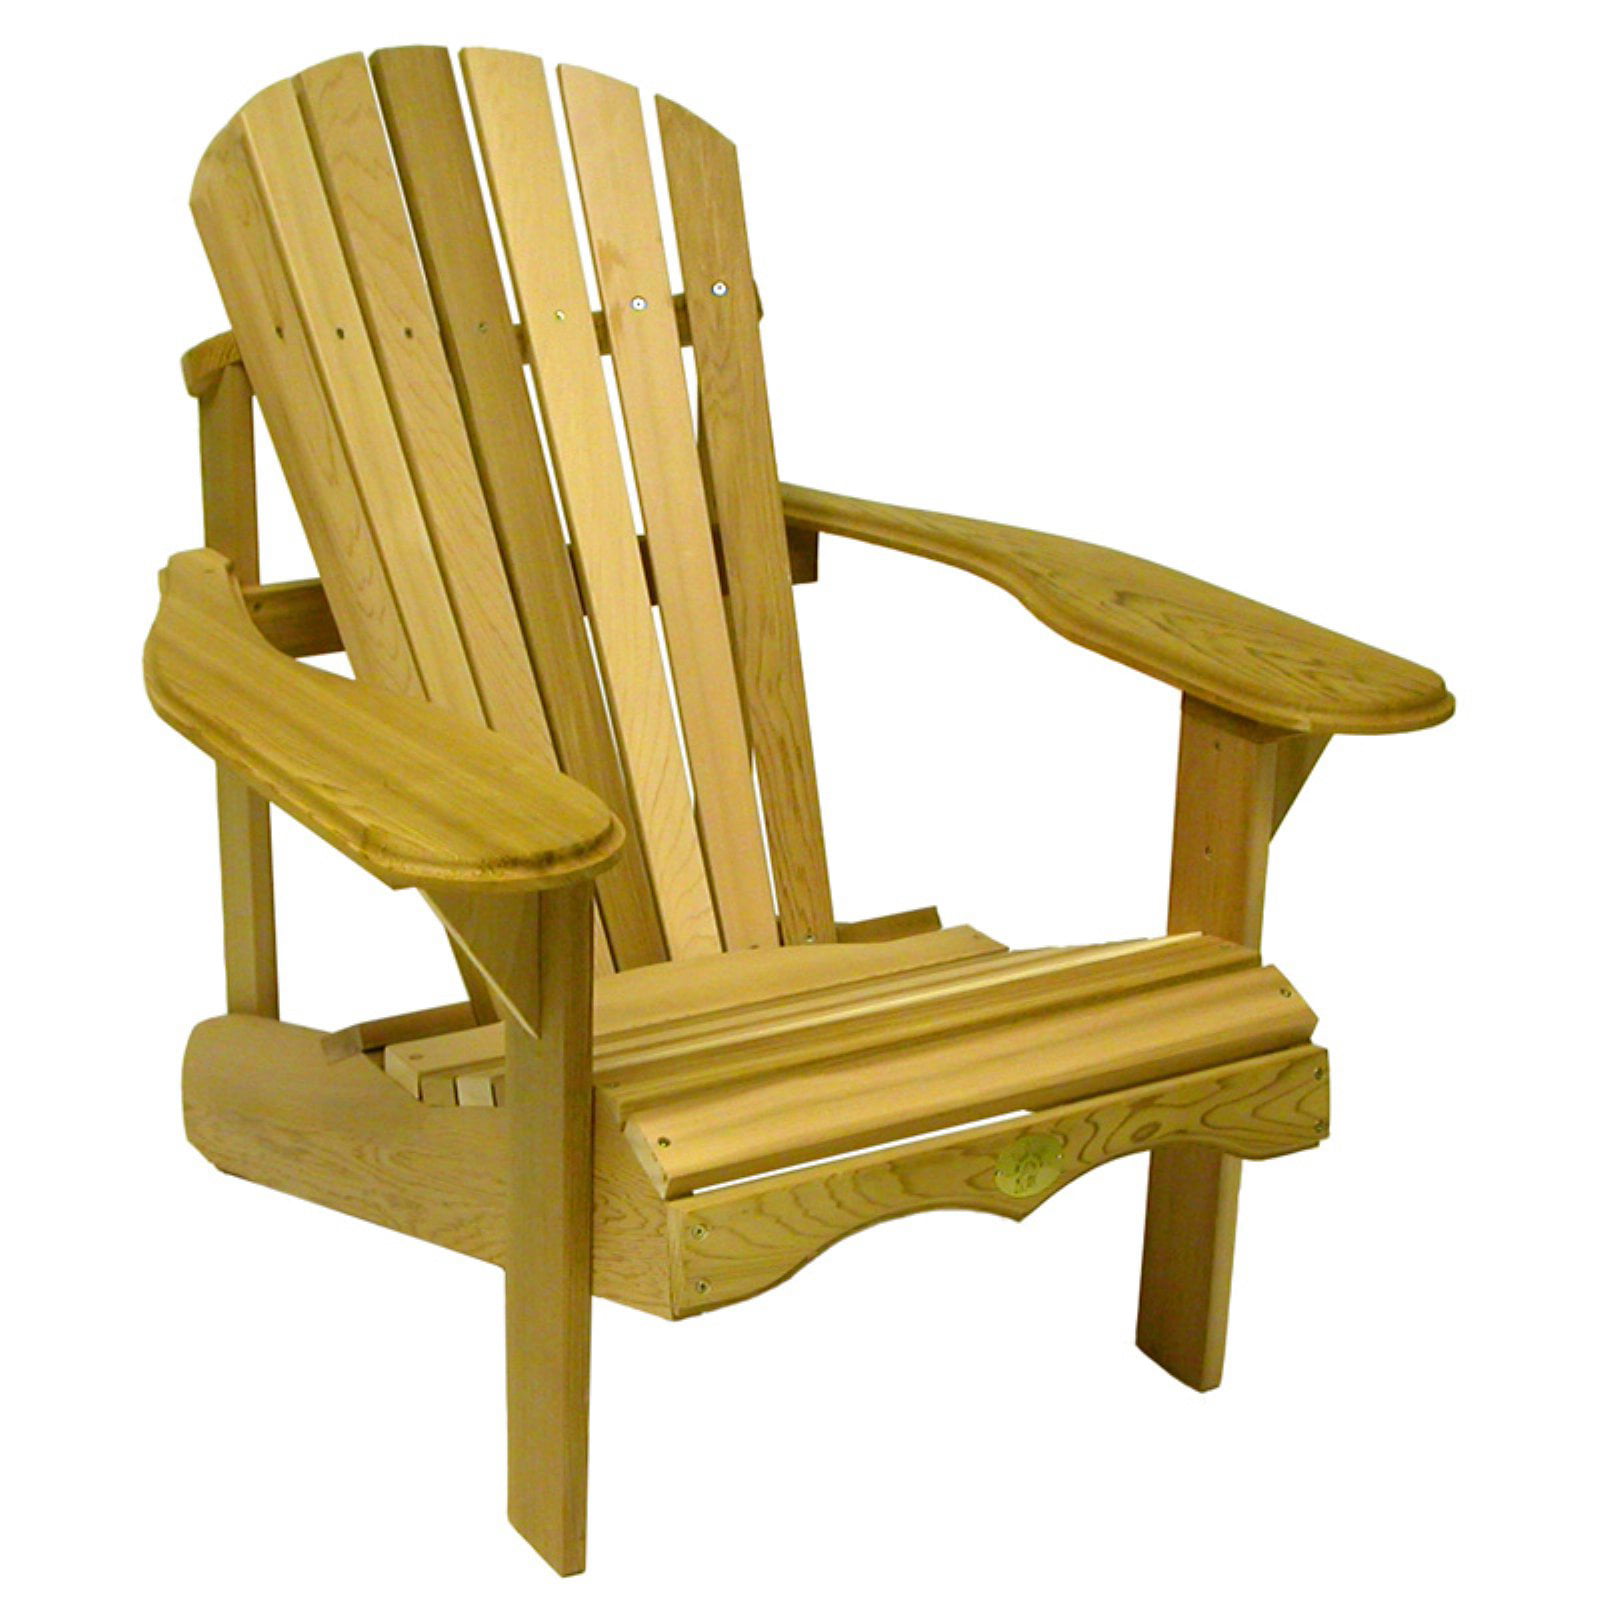 Rustic Natural Cedar Furniture Red Cedar Adirondack Chair ...